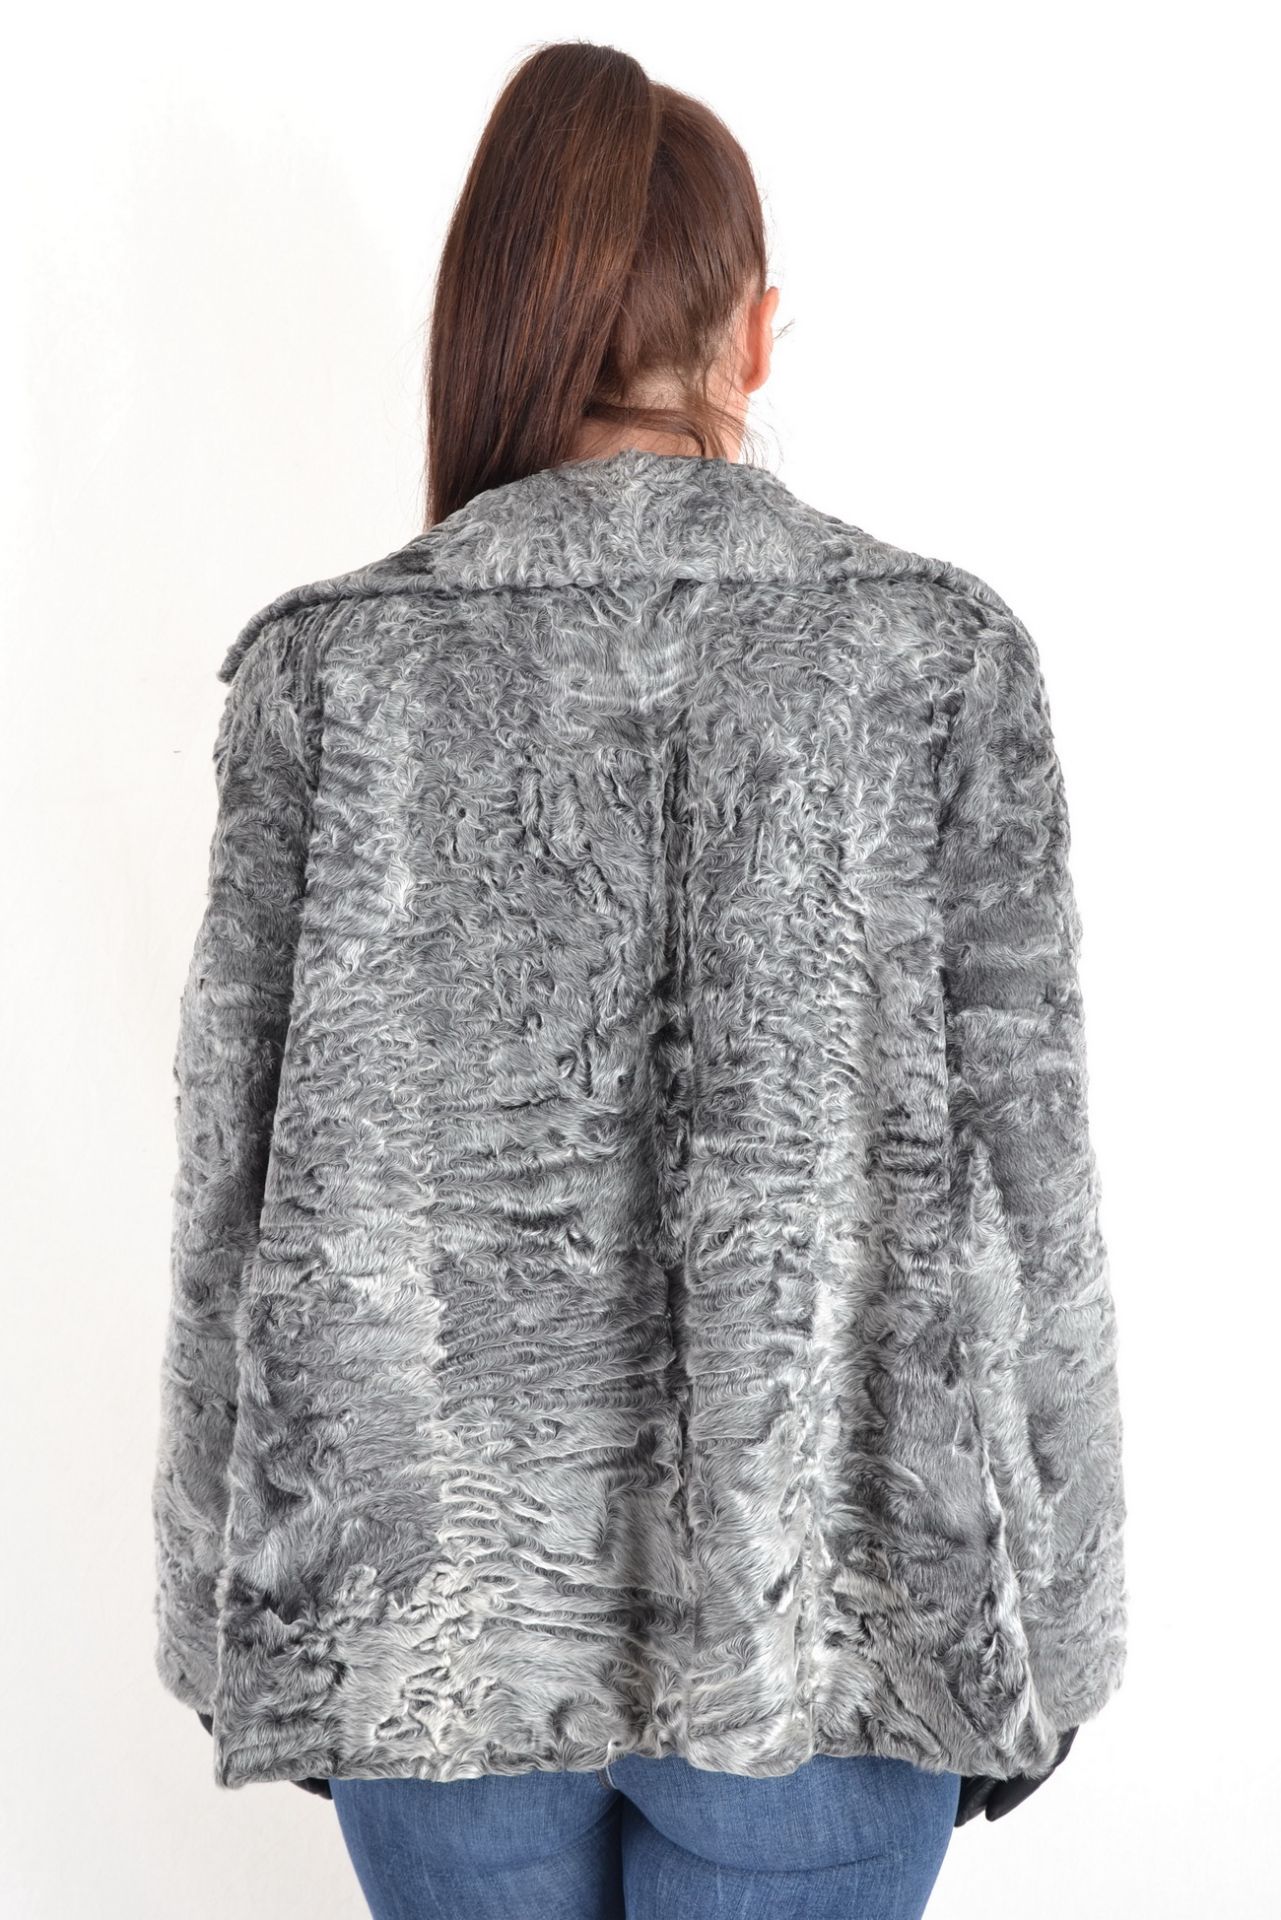 Persianer Swakara Pelzjacke in grau Gr. 44, Persian Swakara fur jacket in gray size 44 - Image 8 of 10